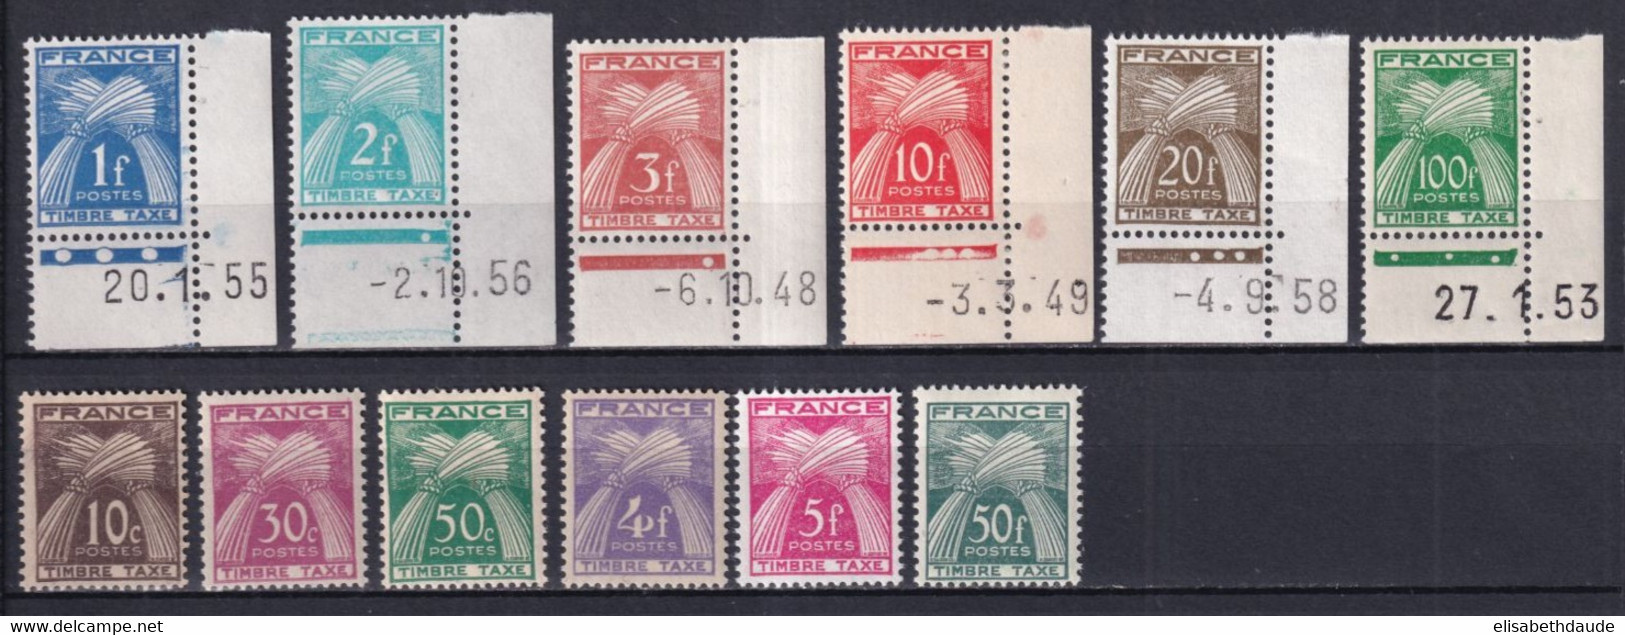 1946/55 - TAXE - YVERT N° 78/89 ** MNH - COTE = 140 EUR. - 1859-1959 Neufs